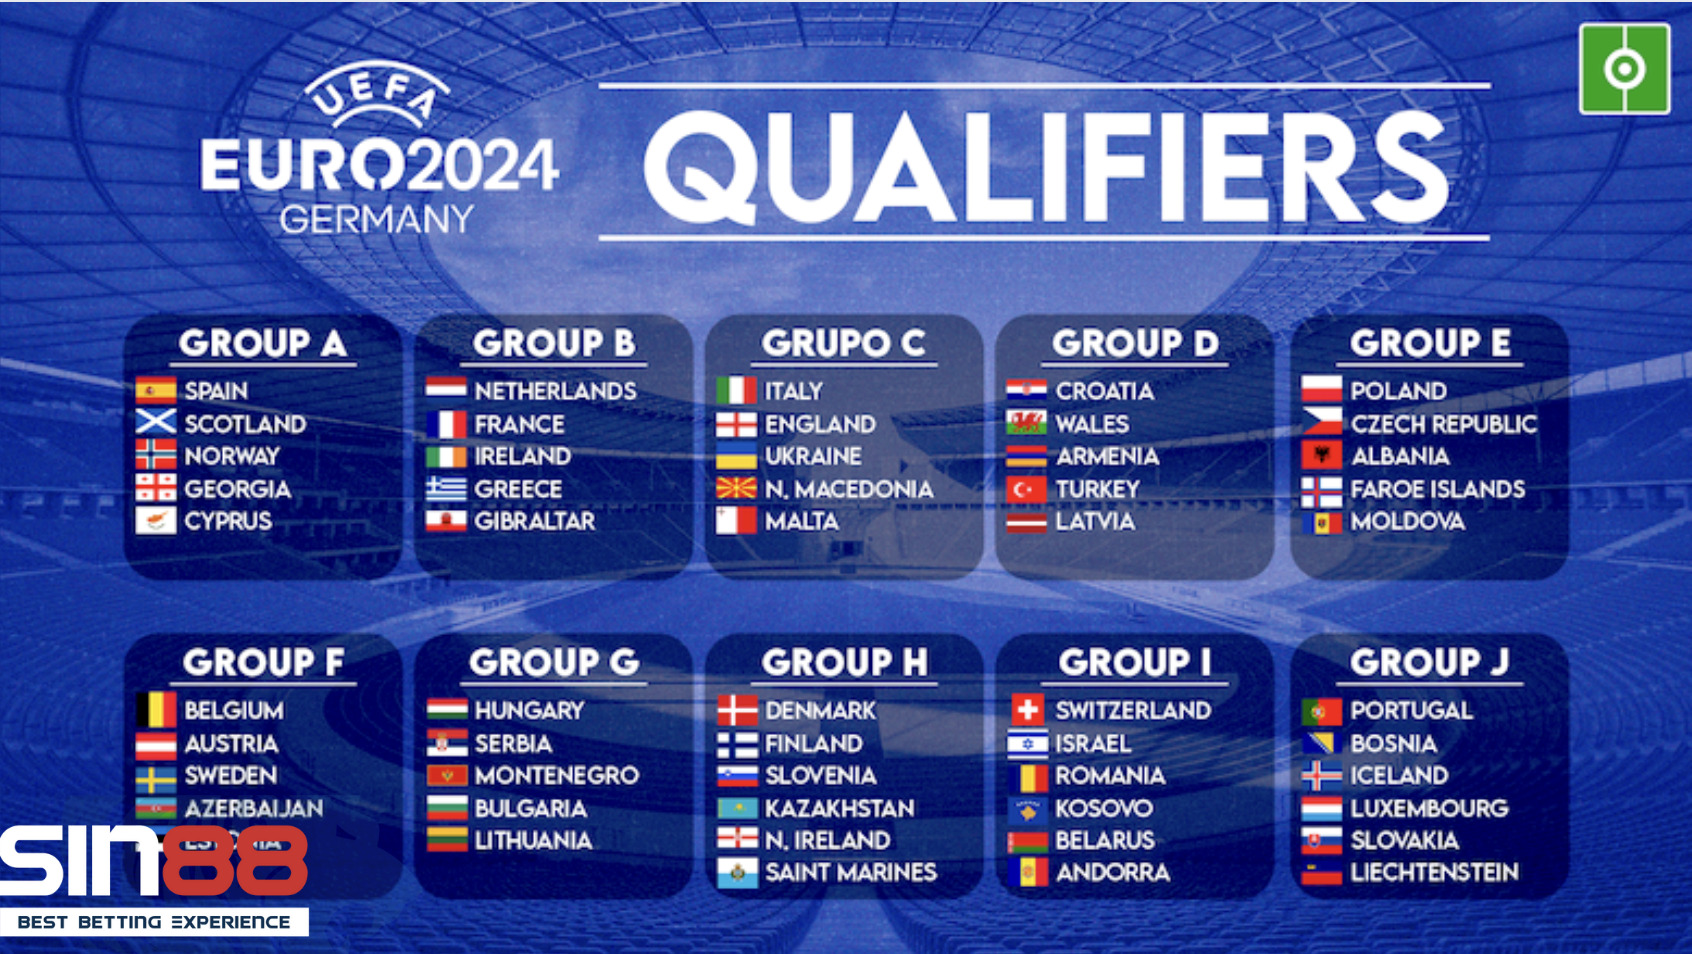 Sơ lượt về vòng loại tại Euro 2024